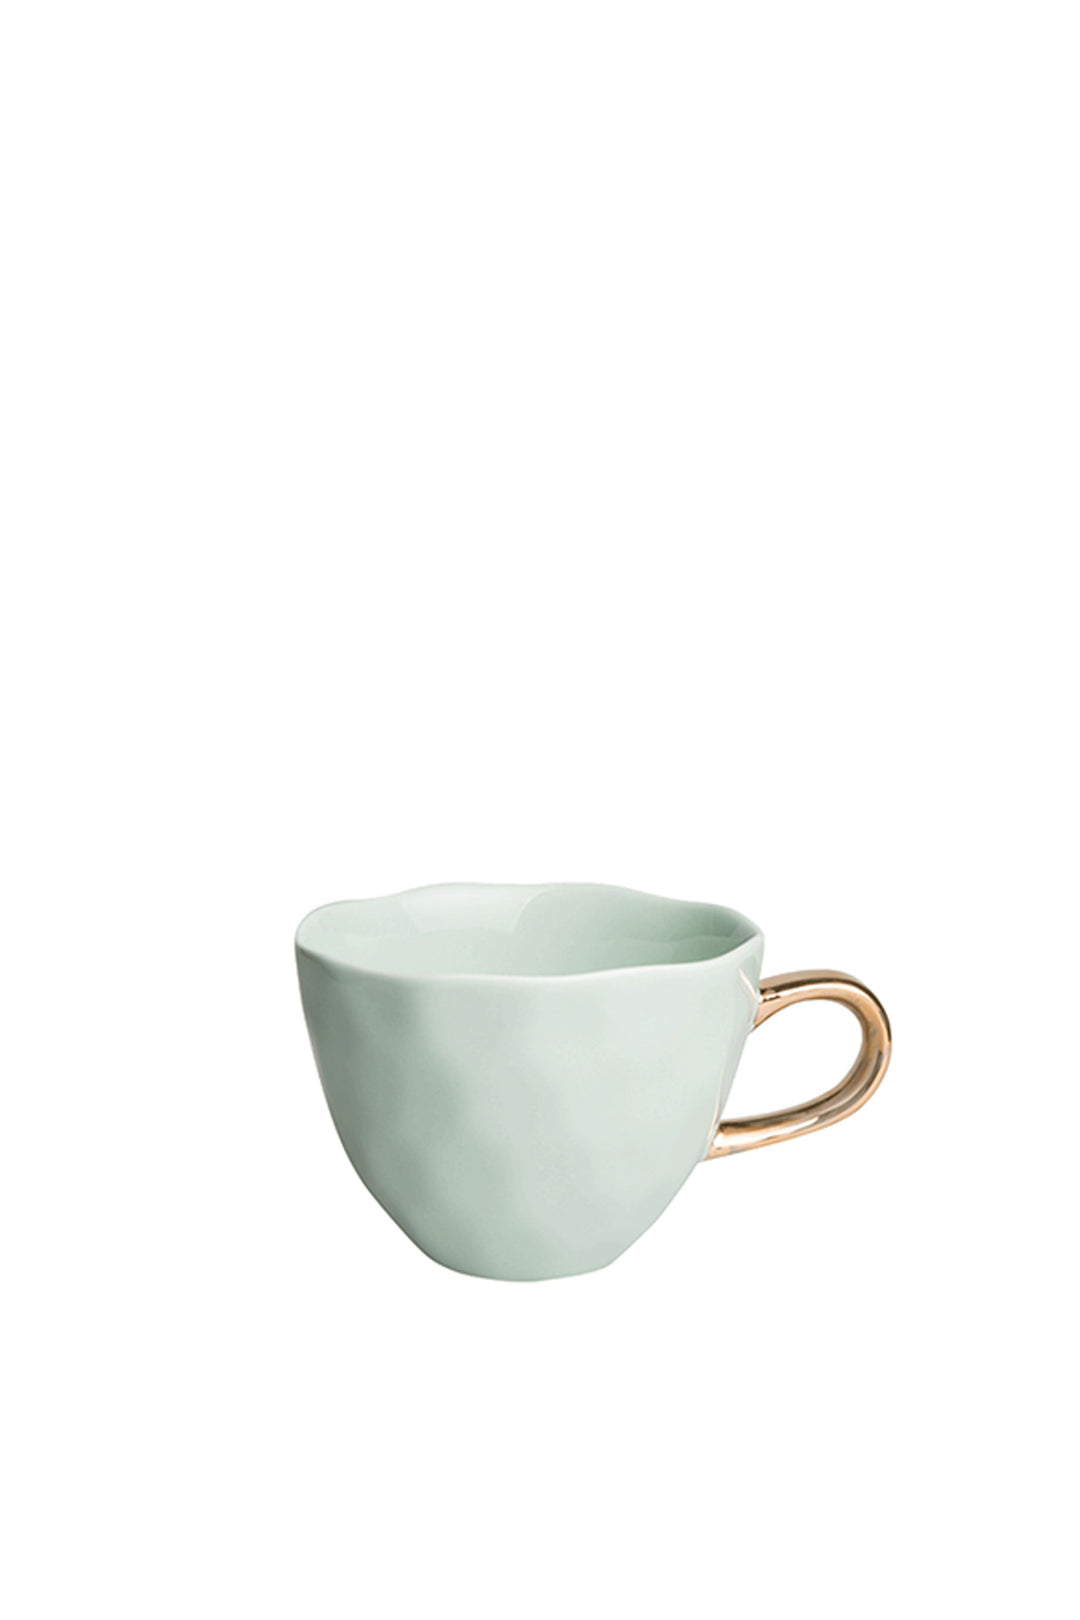 Husk TEA CUP - Celadon